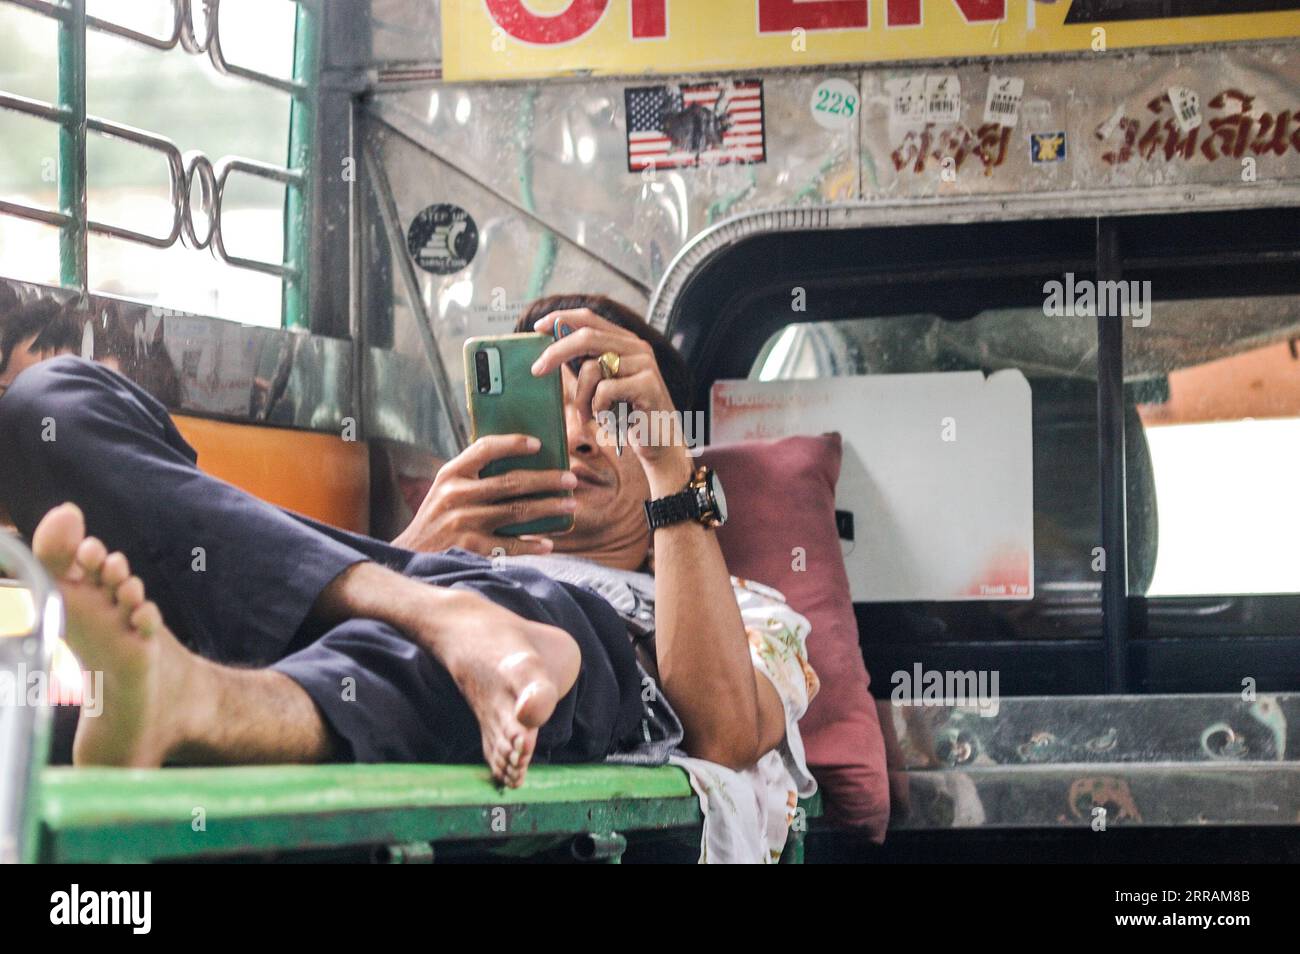 Un jeune homme adulte est assis dans un bus public, parcourant son téléphone portable avec un regard de concentration Banque D'Images